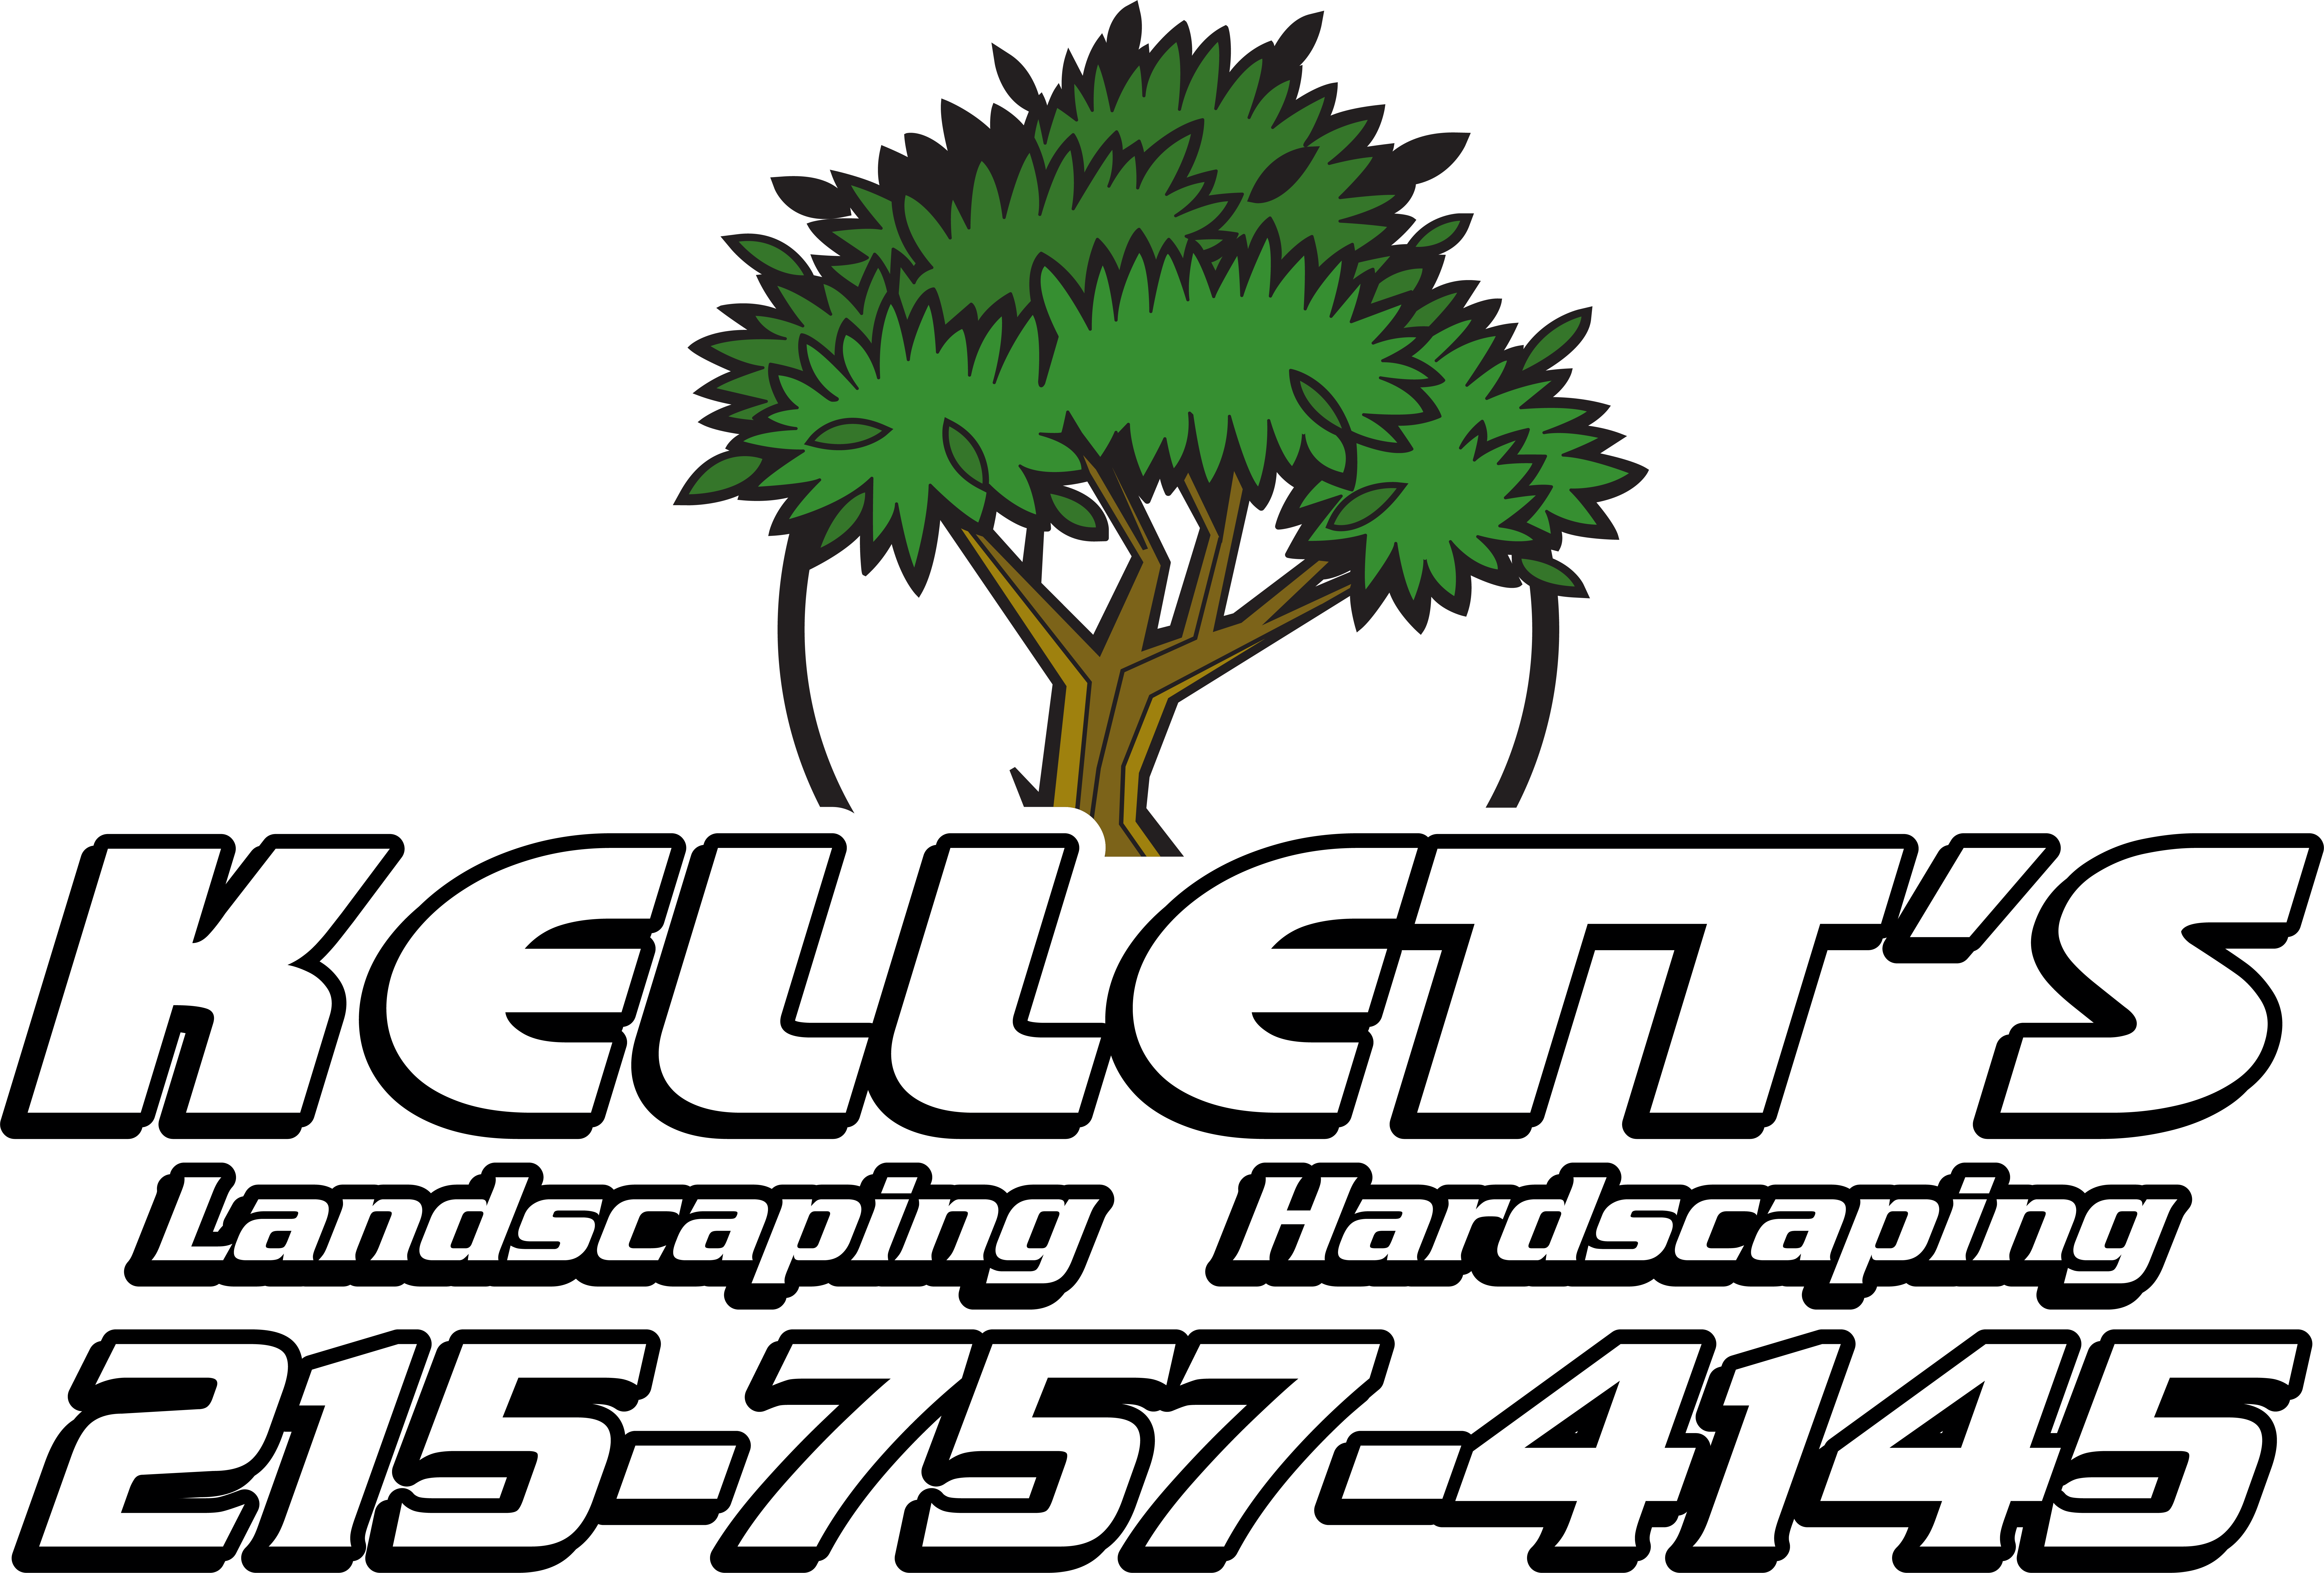 Kellett’s Landscaping